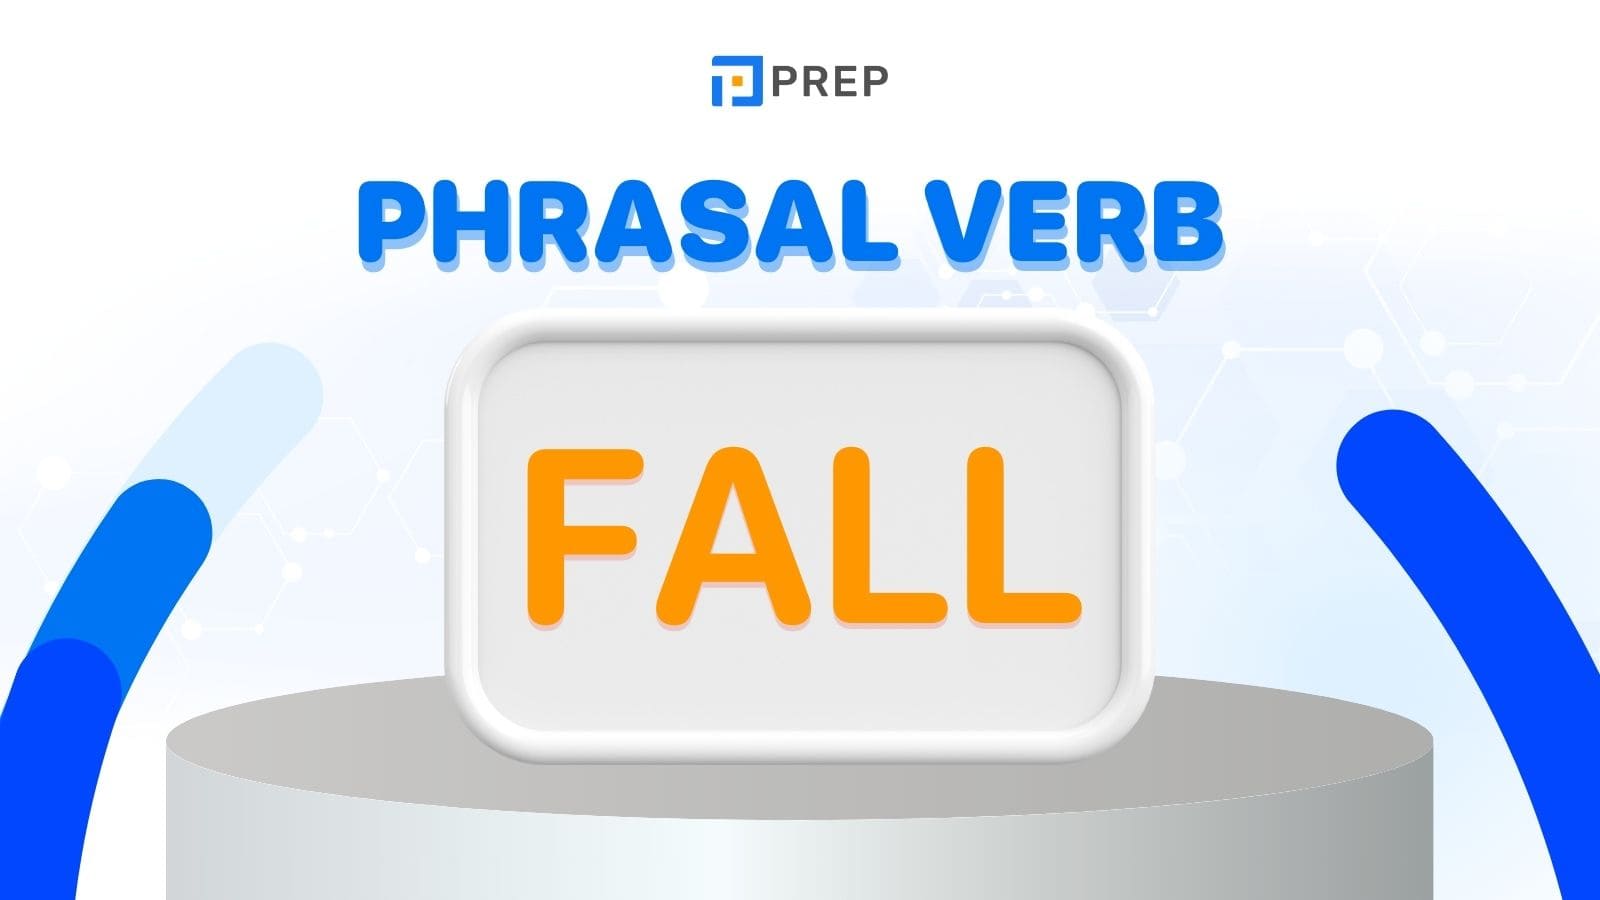 Phrasal verb Fall tiếng Anh: Fall out, Fall down,... thông dụng